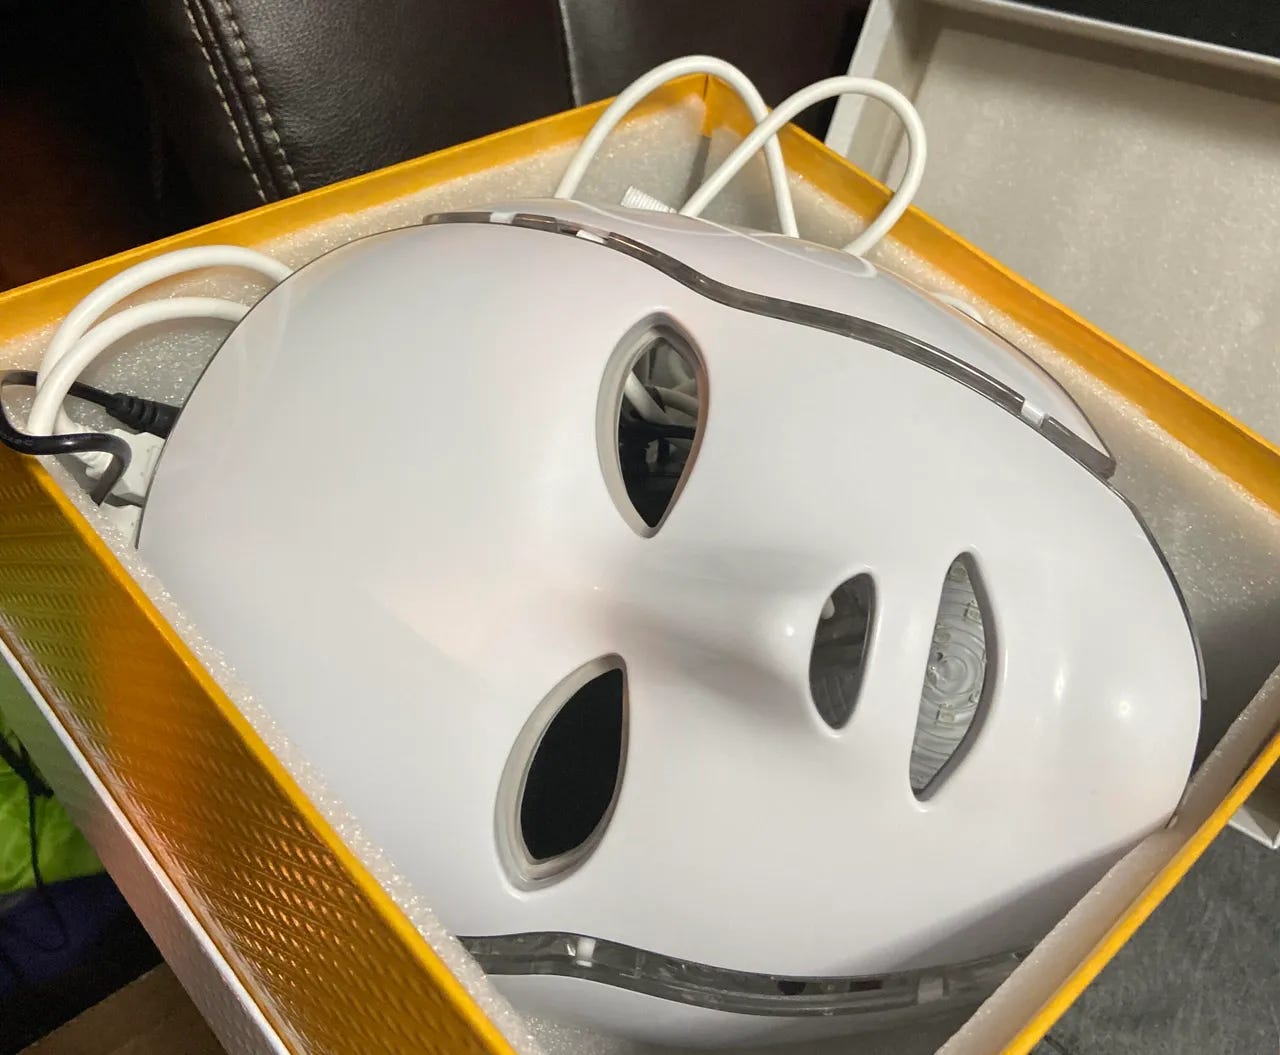 A mask in a box